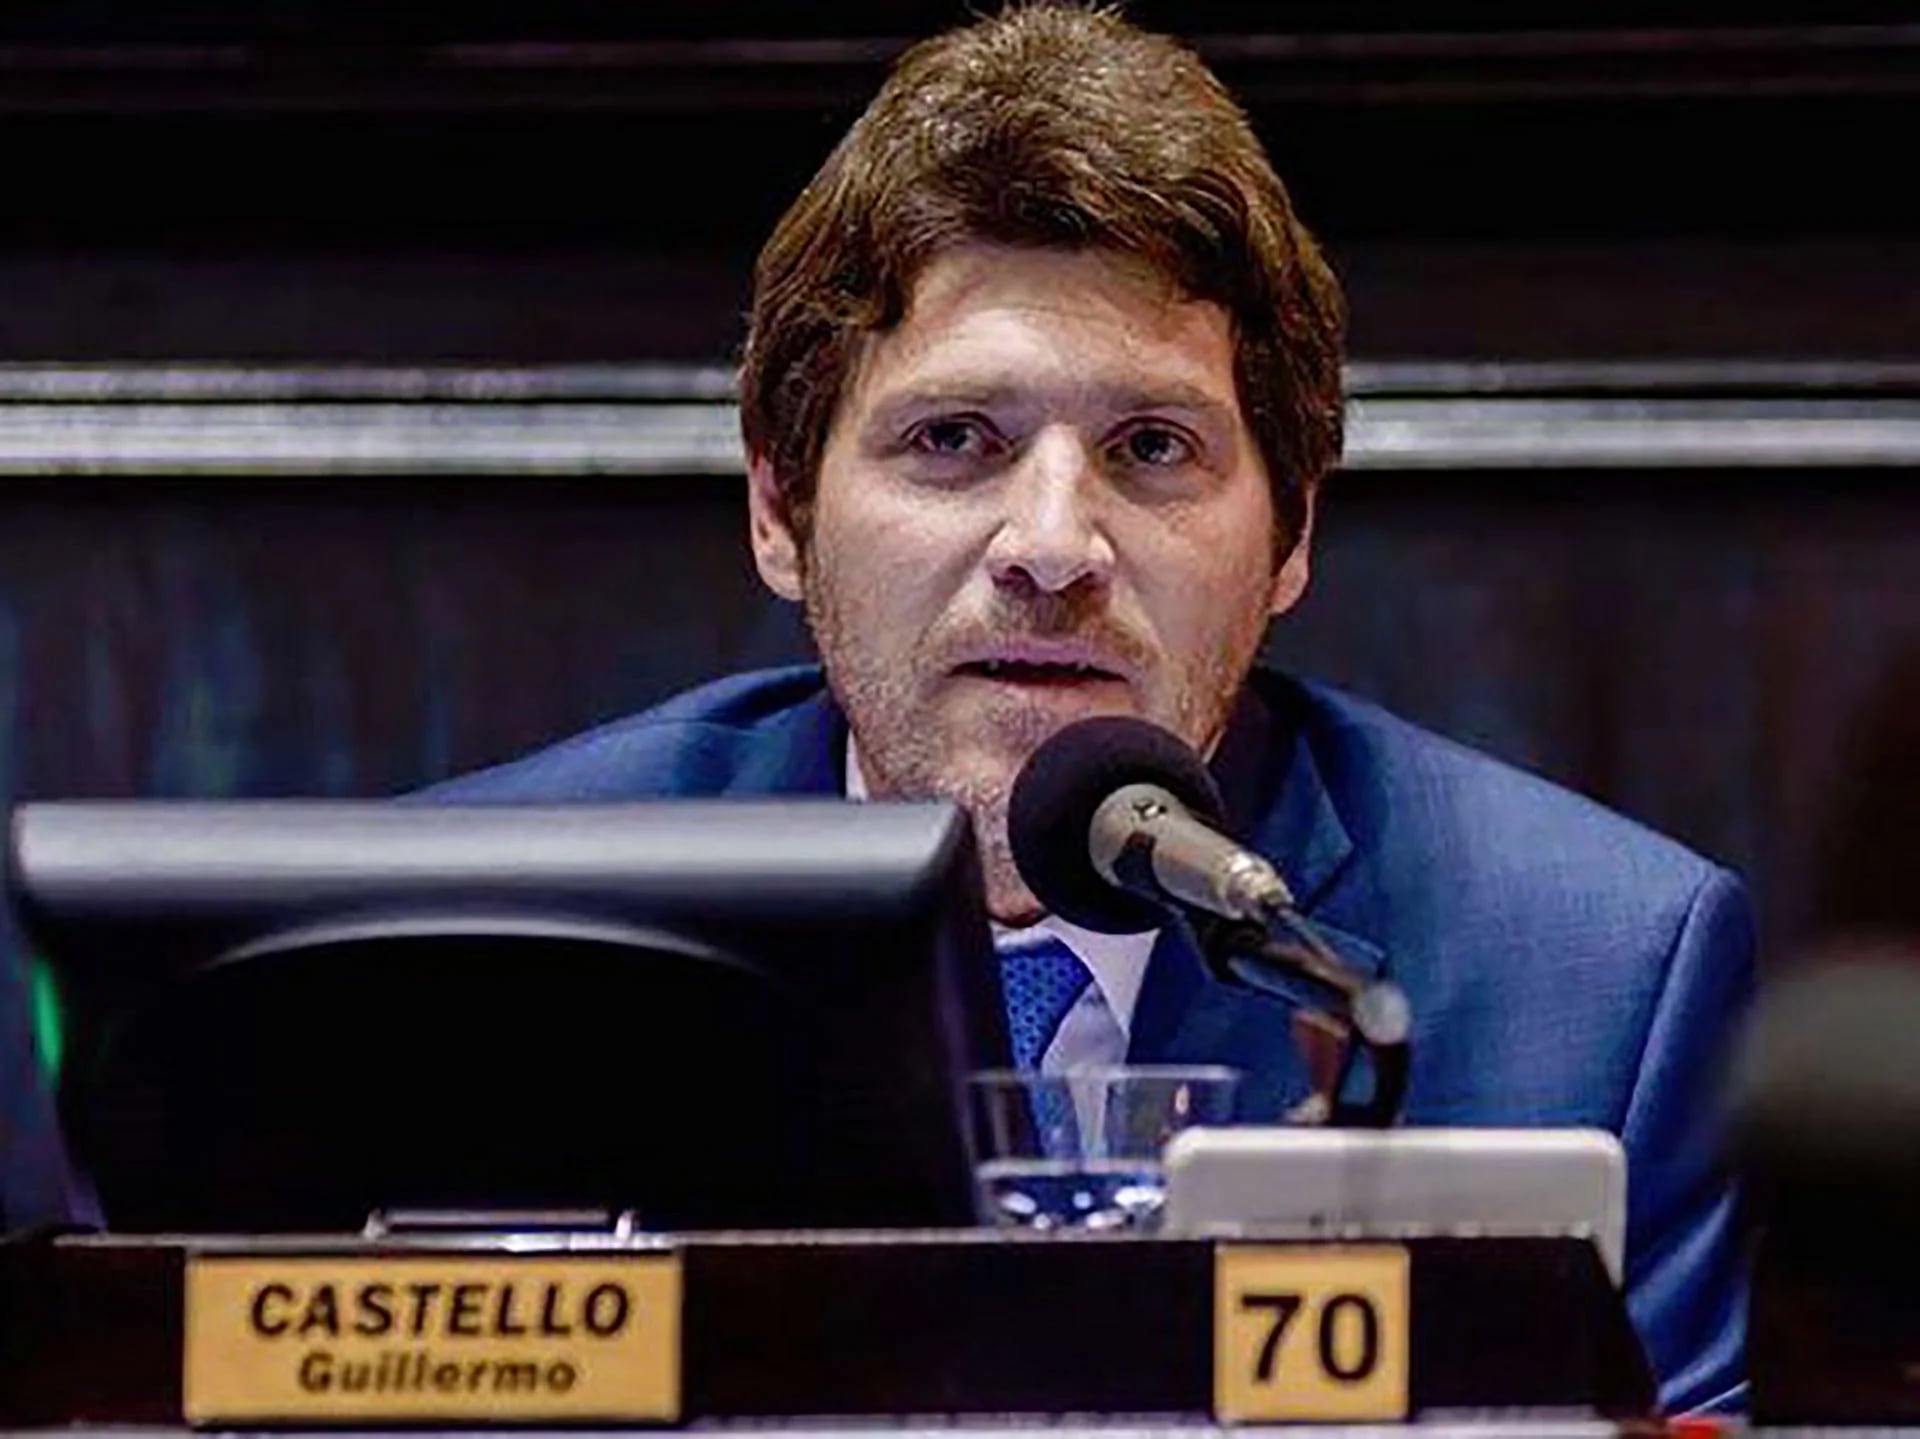 Castello es diputado provincial desde 2015. Ejerció la profesión de escribano durante 20 años y es profesor de Historia Constitucional en la Facultad de Derecho de la Univ. Nac. de Mar del Plata